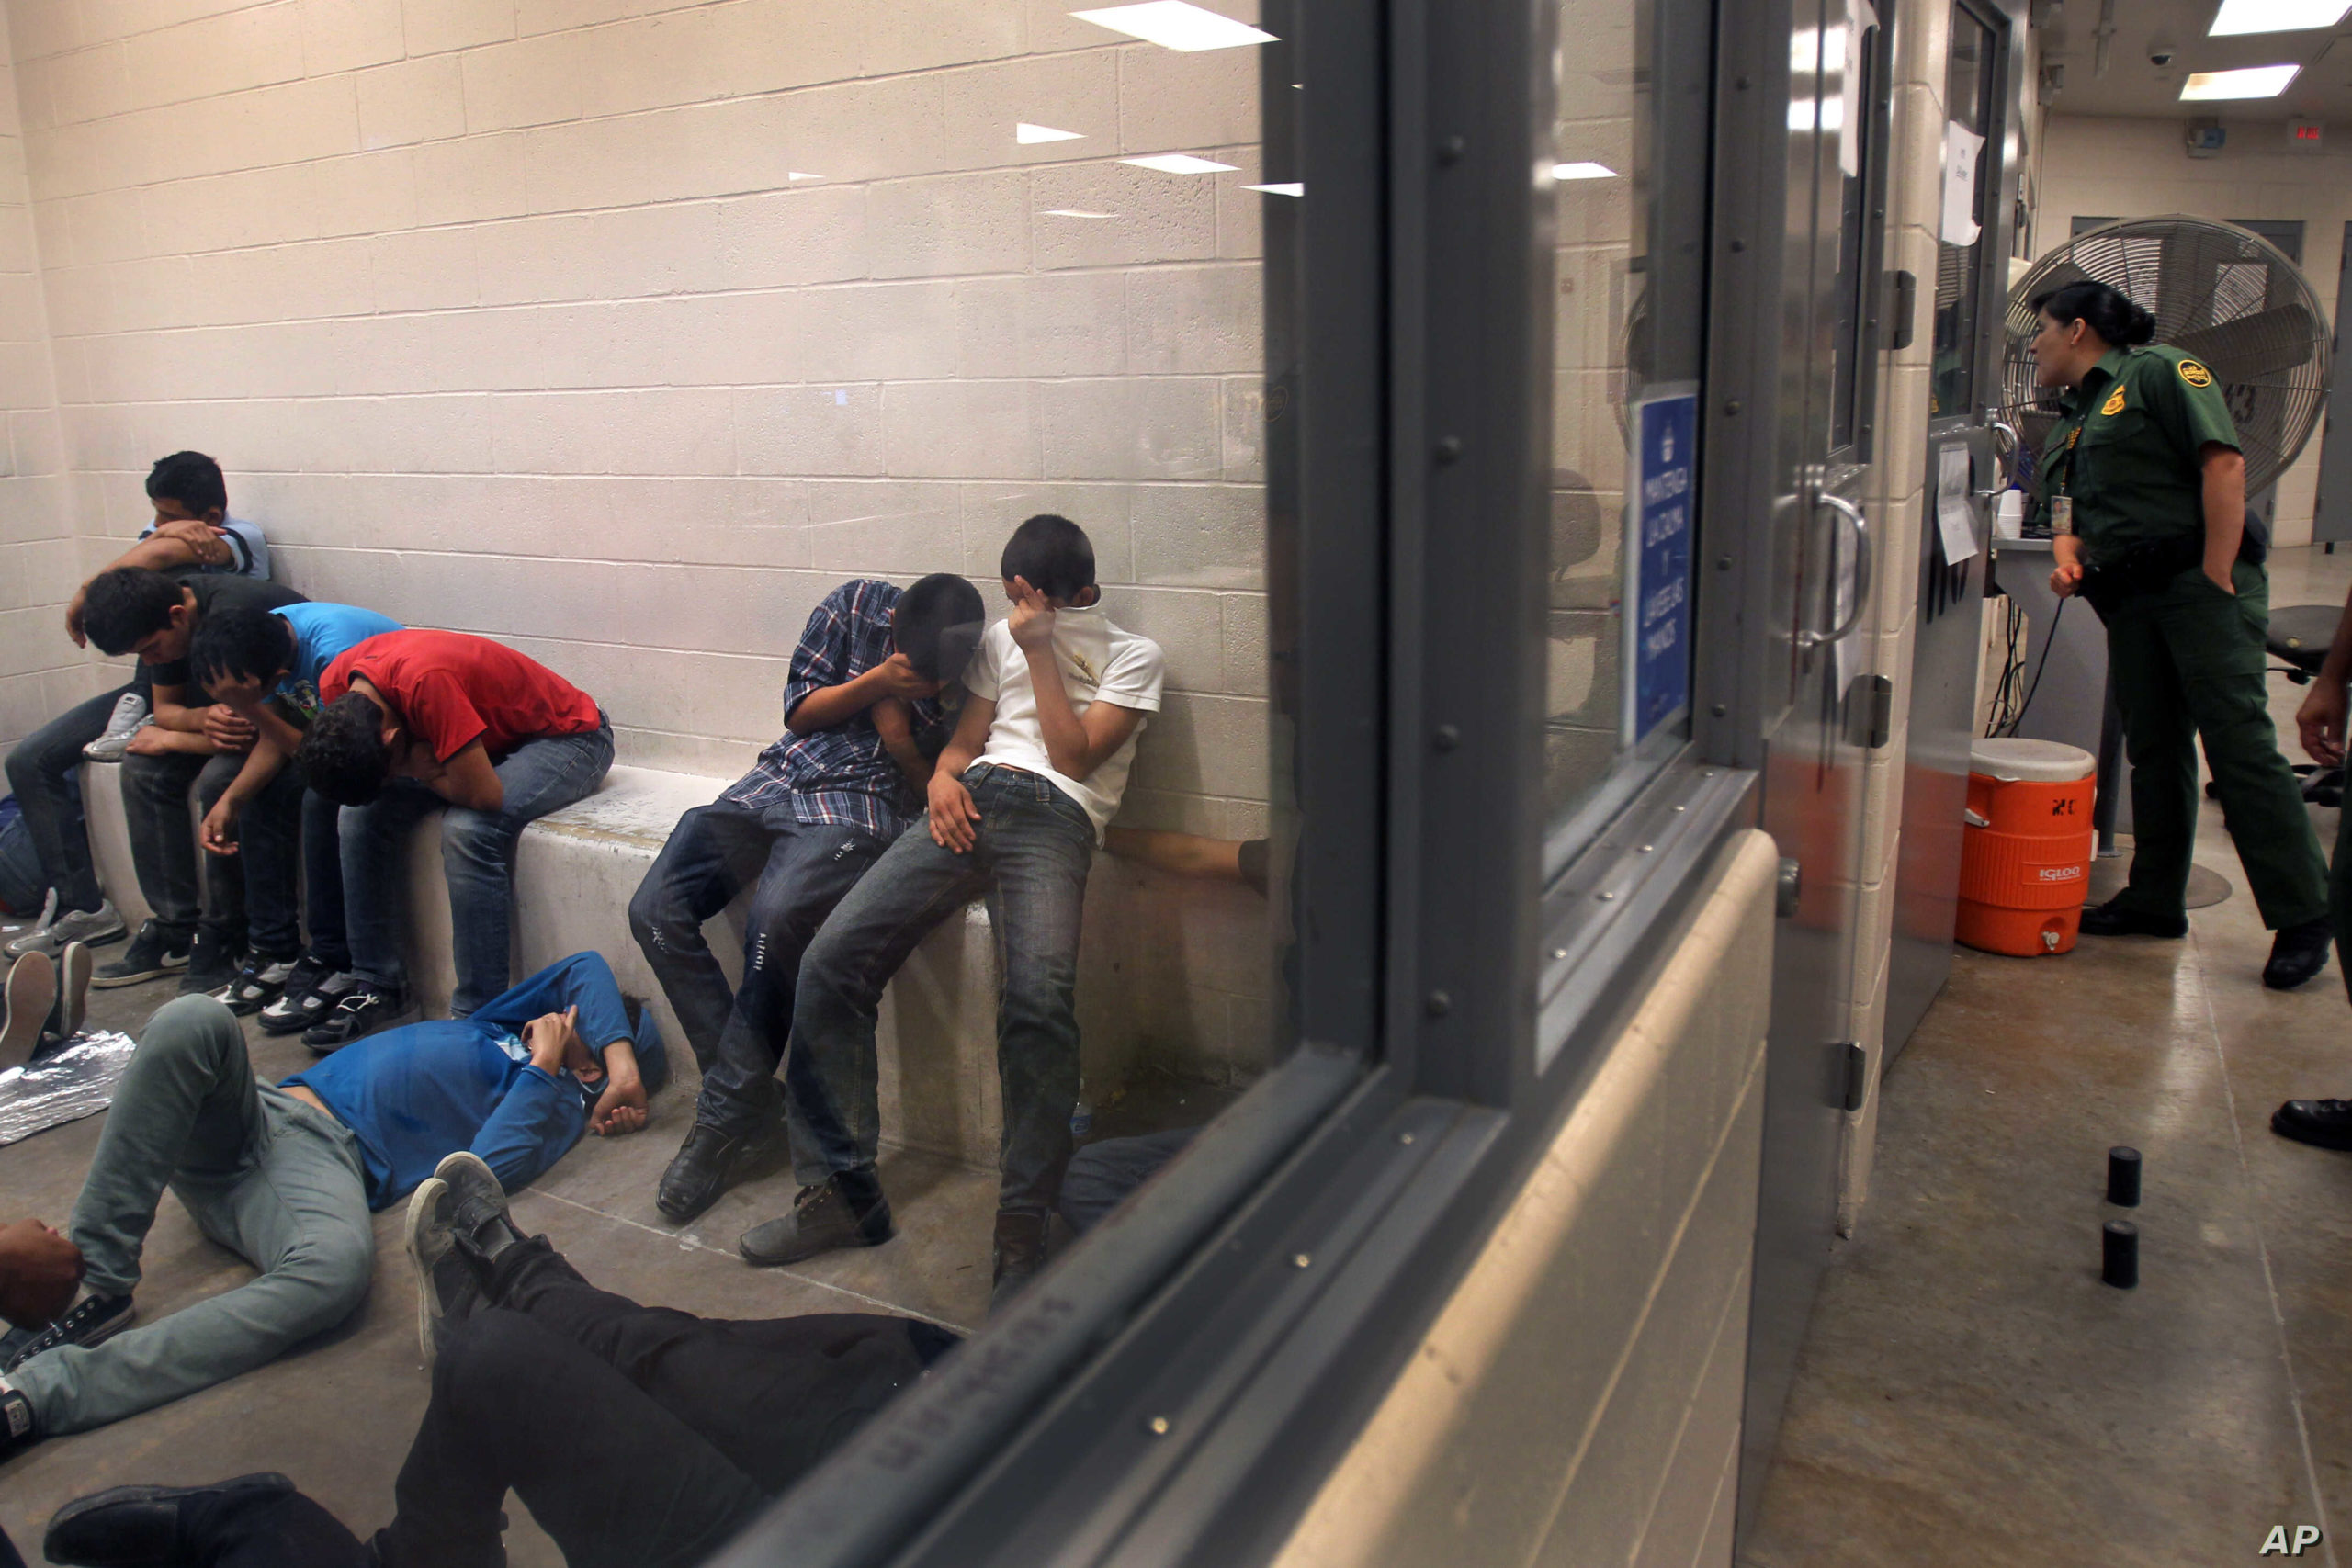 Según organizaciones pro inmigrantes Centros de detención de ICE fomentan violaciones a derechos humanos y piden medidas alternas a la detención. DHS evalúa cientos de denuncias sobre sus cetros de ICE y dice que corregirá situación. | Foto: AP / Voz de América